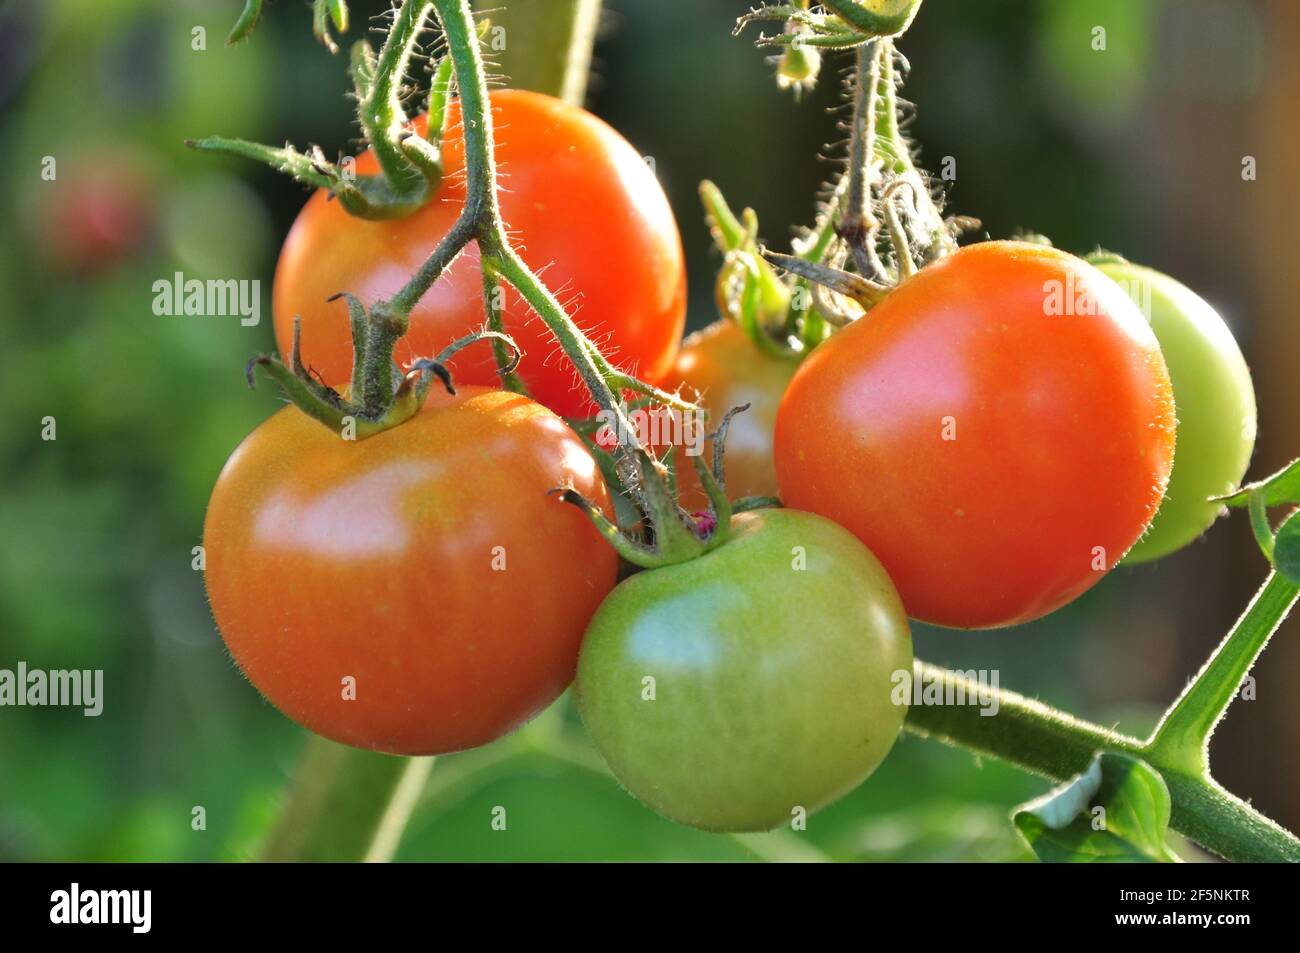 Tomaten am Strauch, lecker und gesund im Garten. - Tomatoes on the bush, delicious and healthy in the garden. Stock Photo